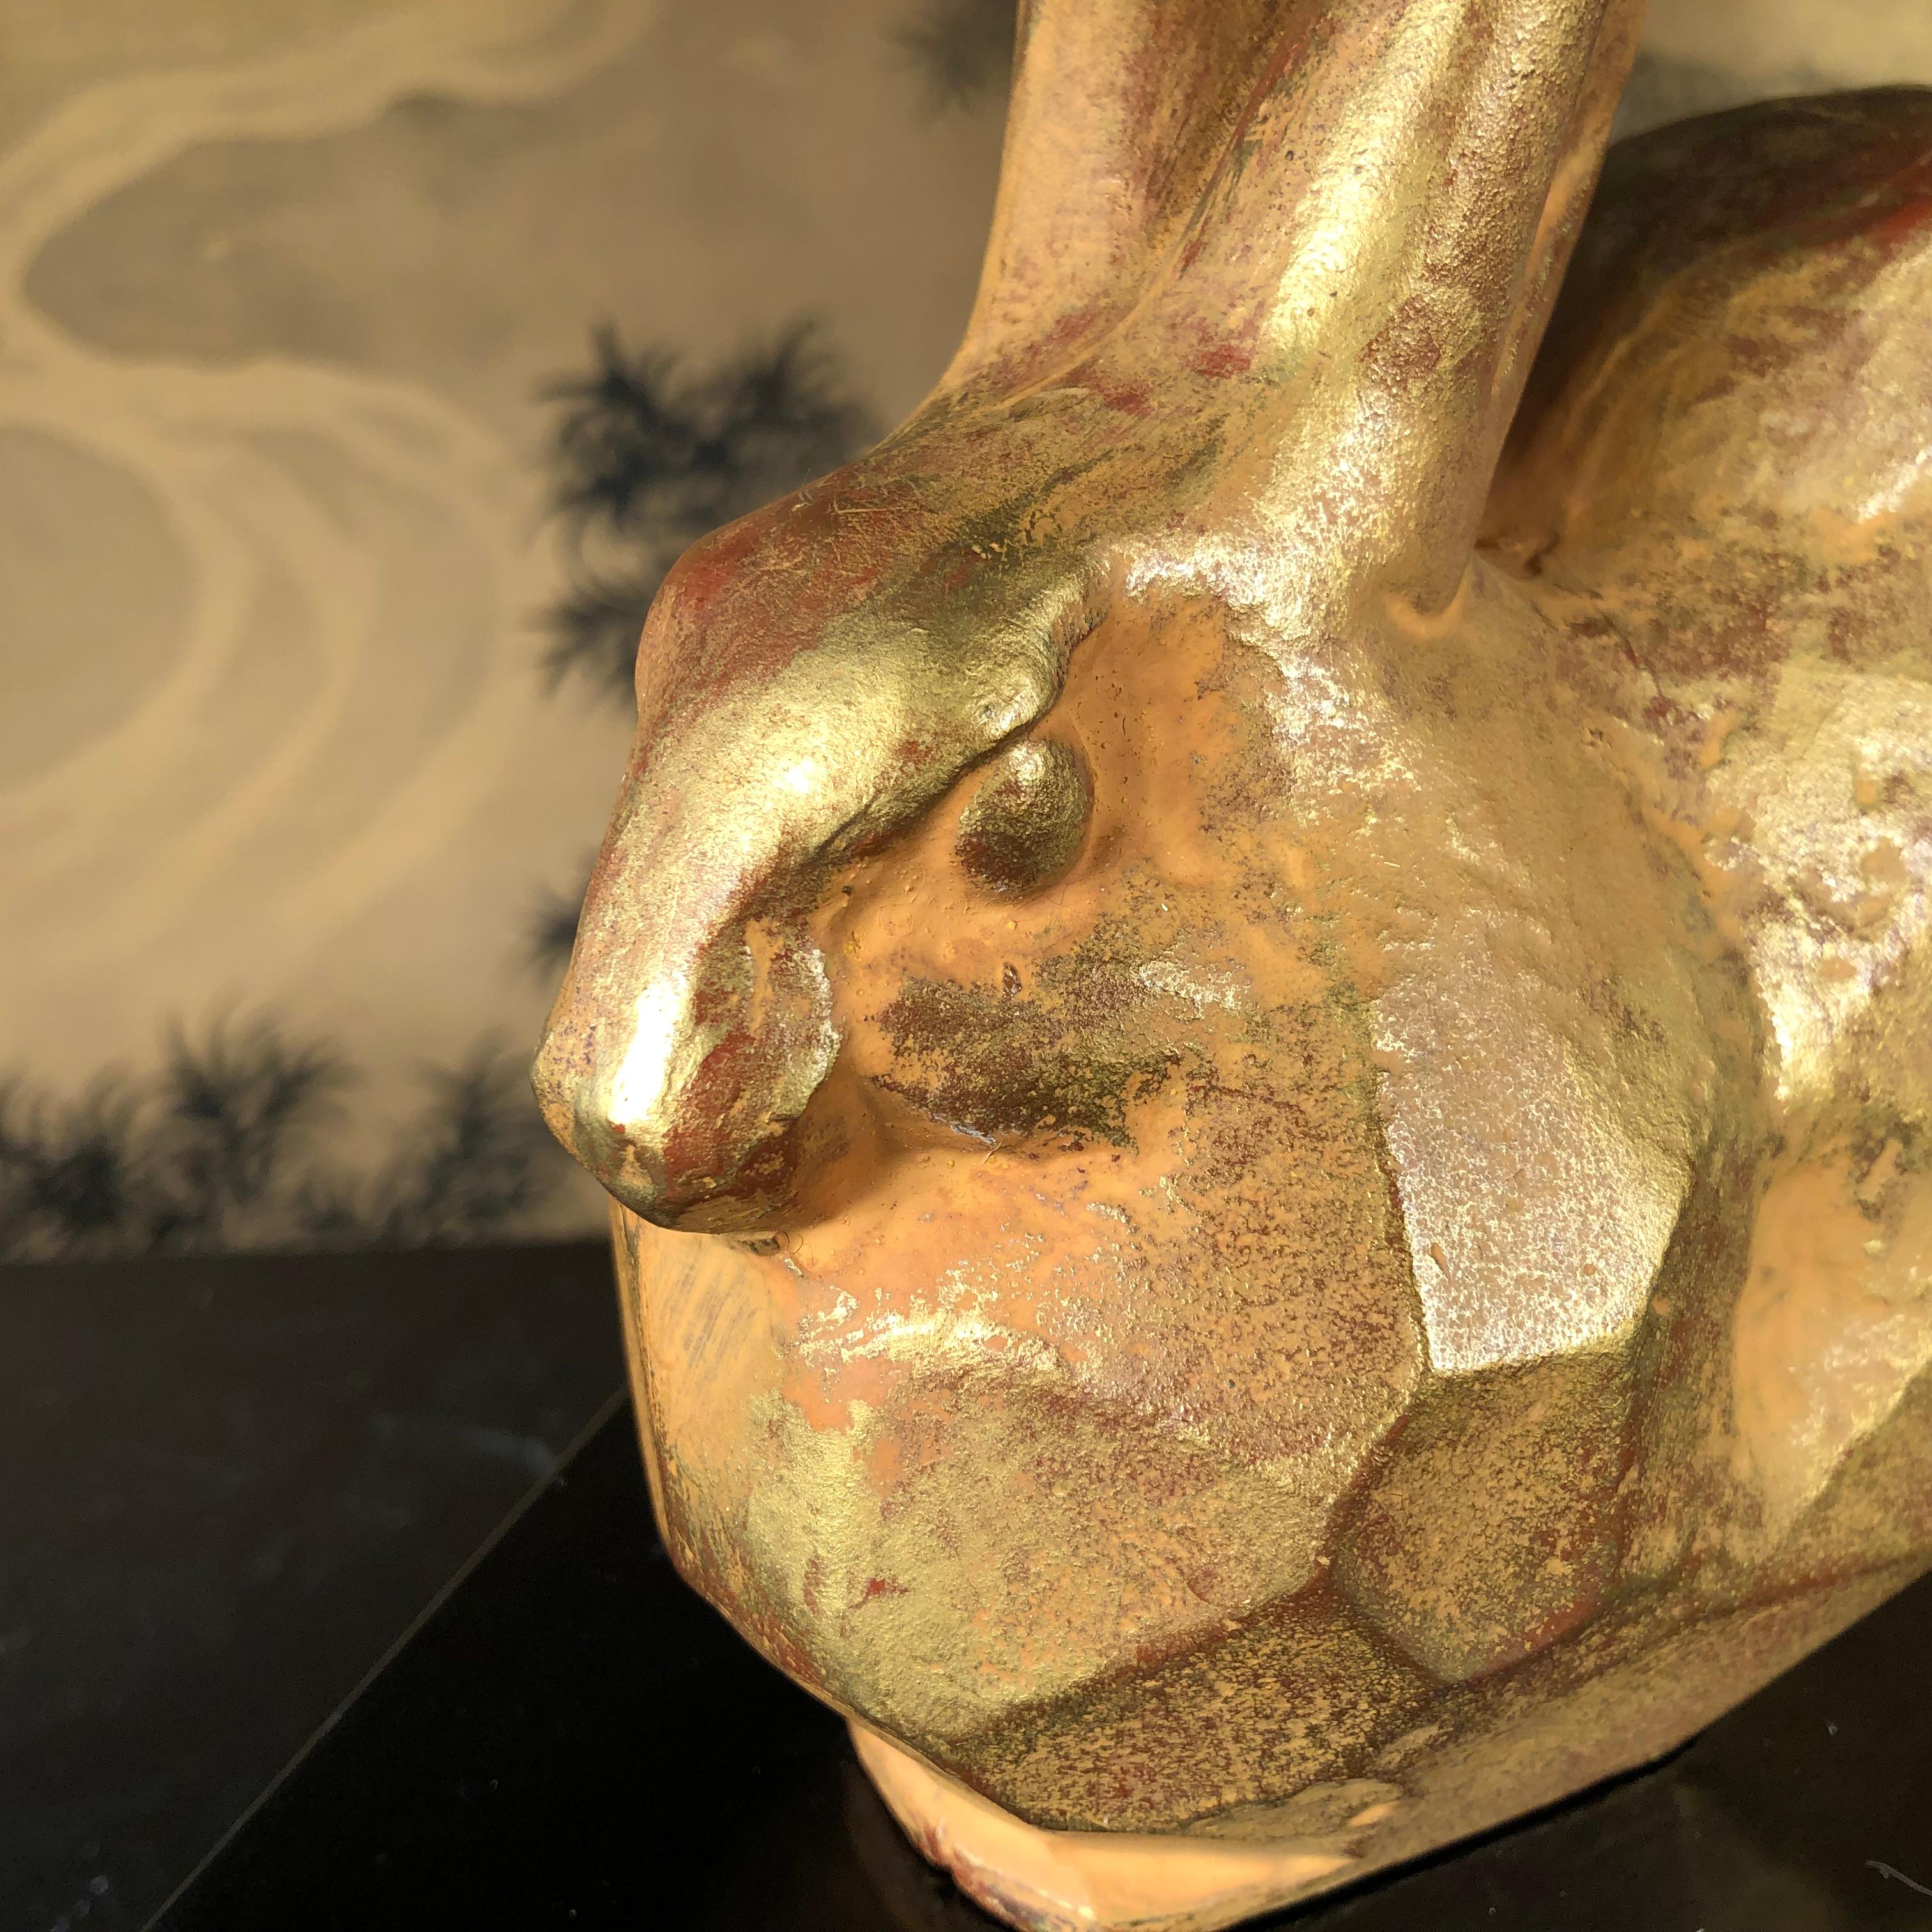 Showa Japanese Golden Rabbit Sculpture by Famous Artist Sotaro